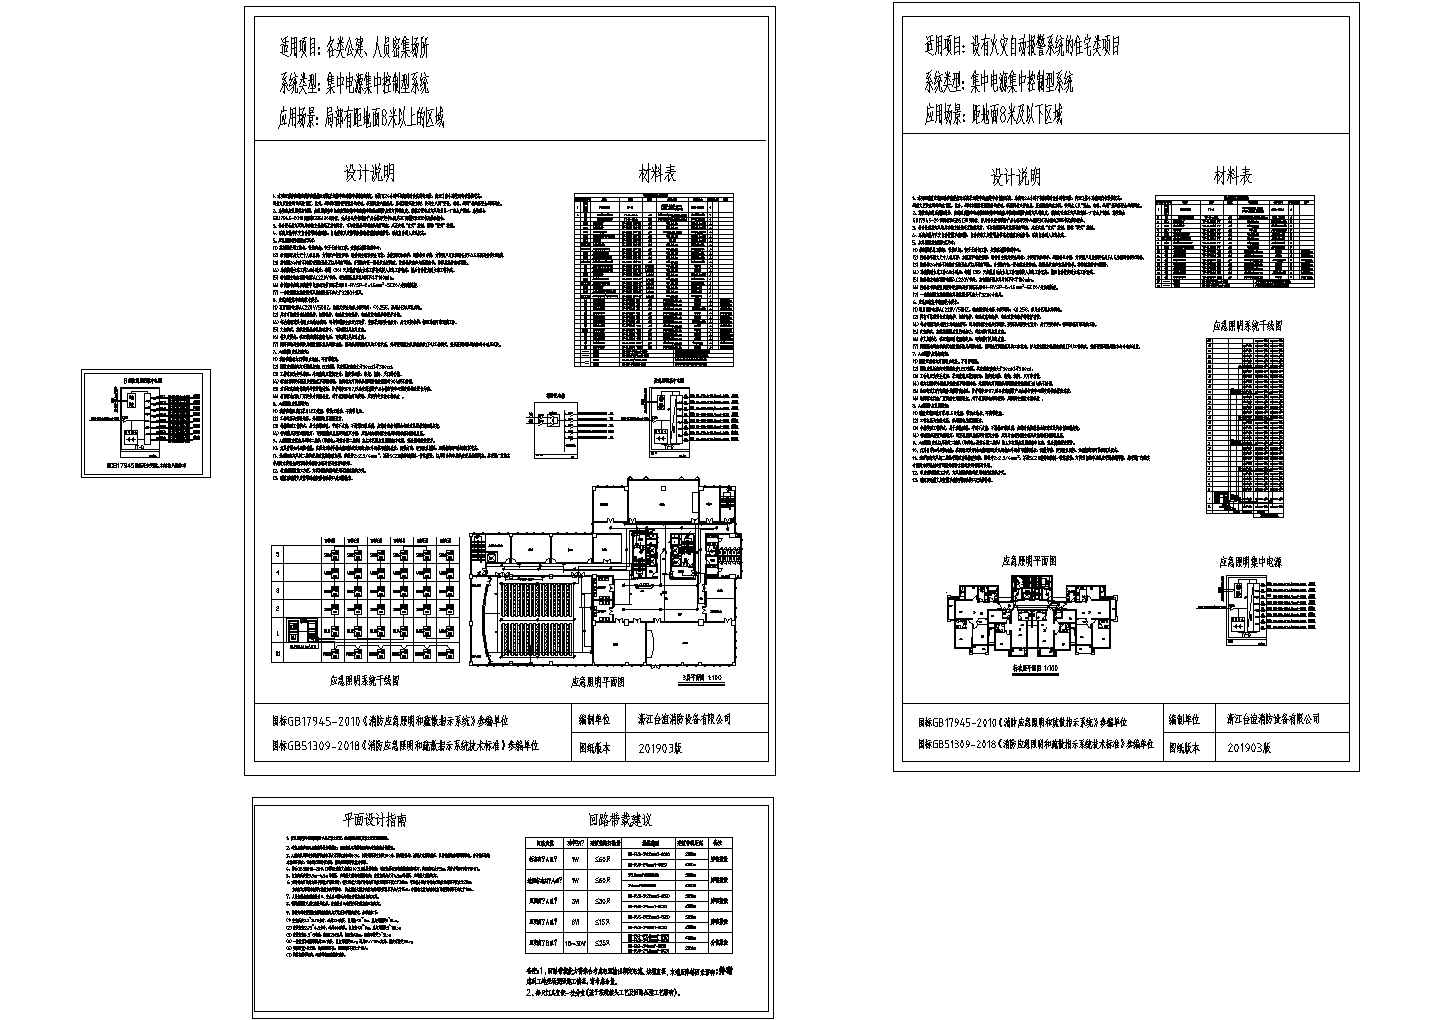 消防应急照明疏散指示系统设计例图---（适用于GB51309-2018）20190319版